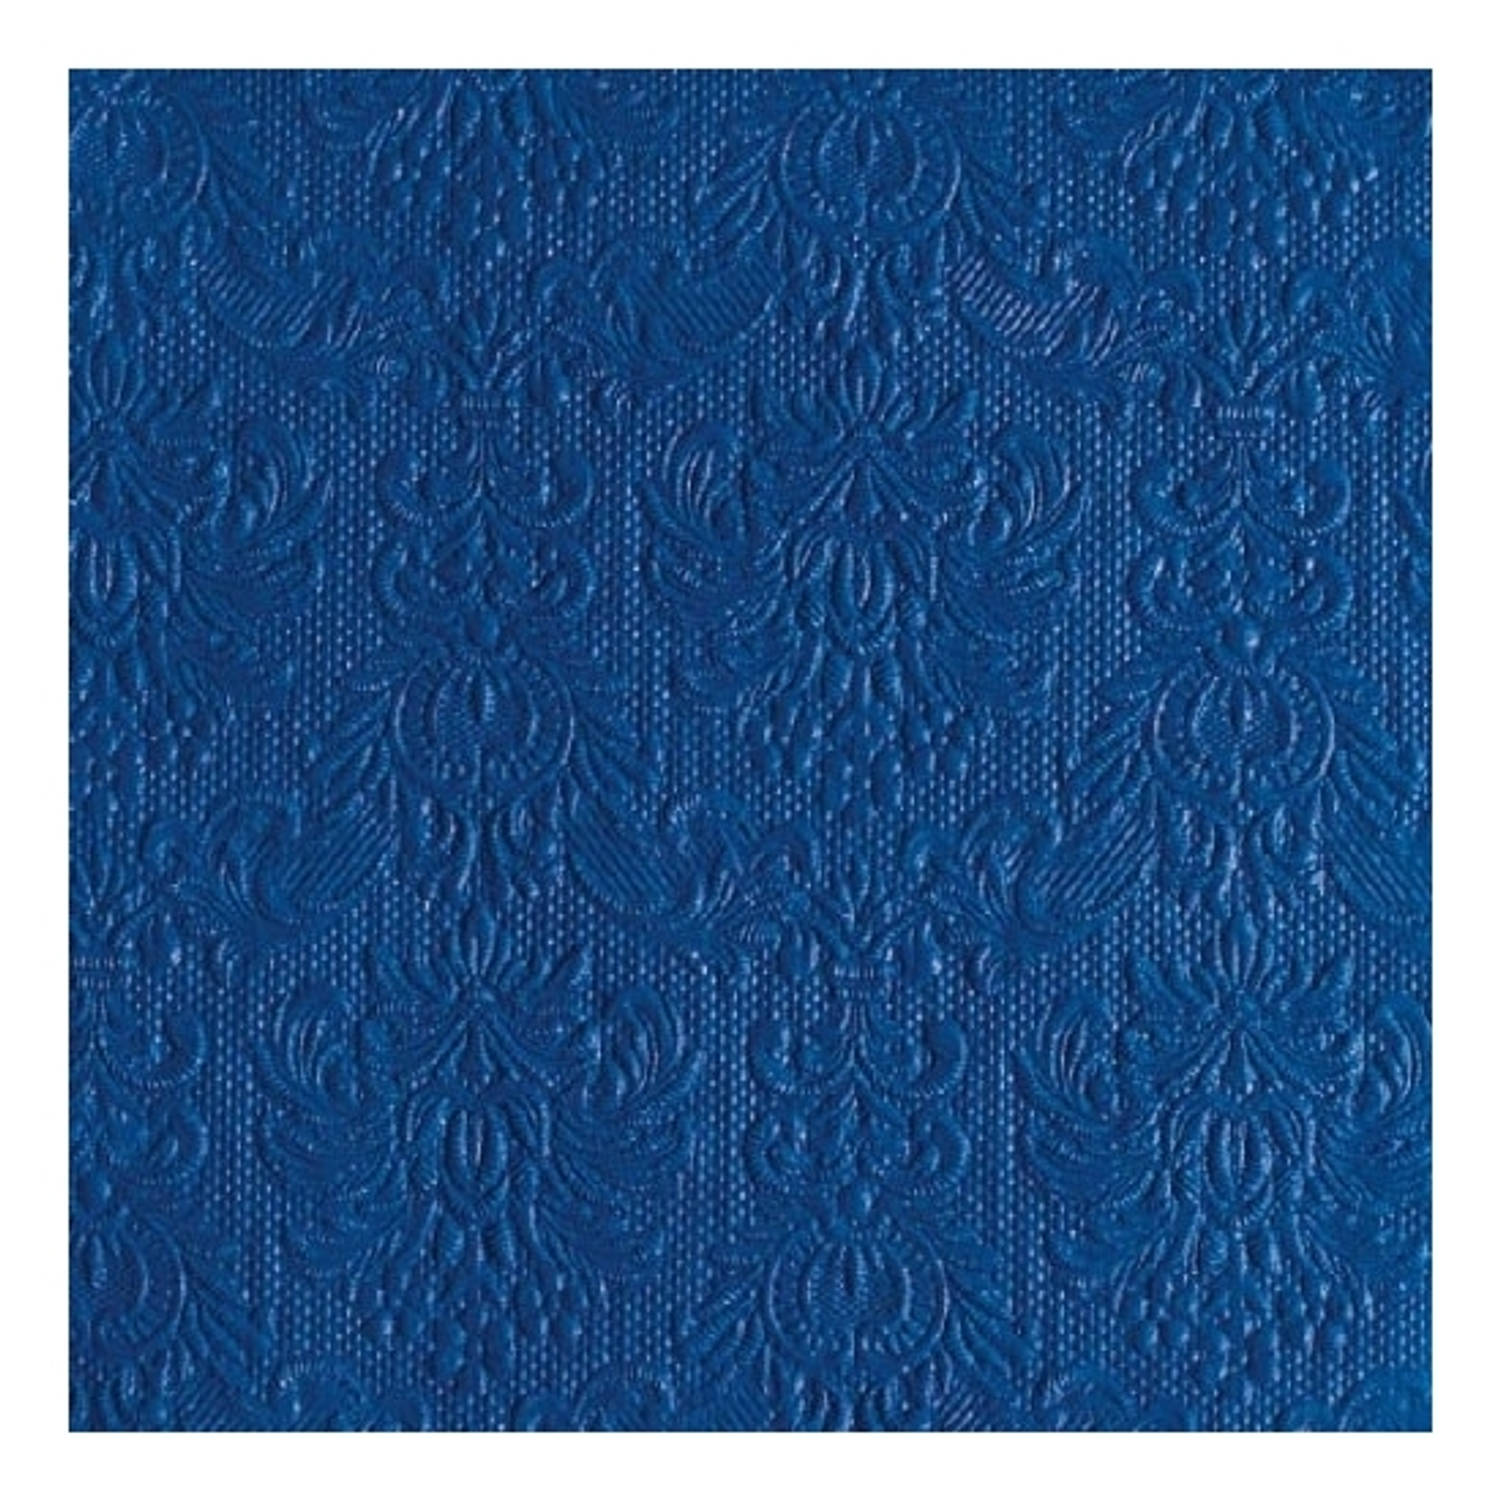 30x Servetten blauw met decoratie 3-laags - Feestservetten